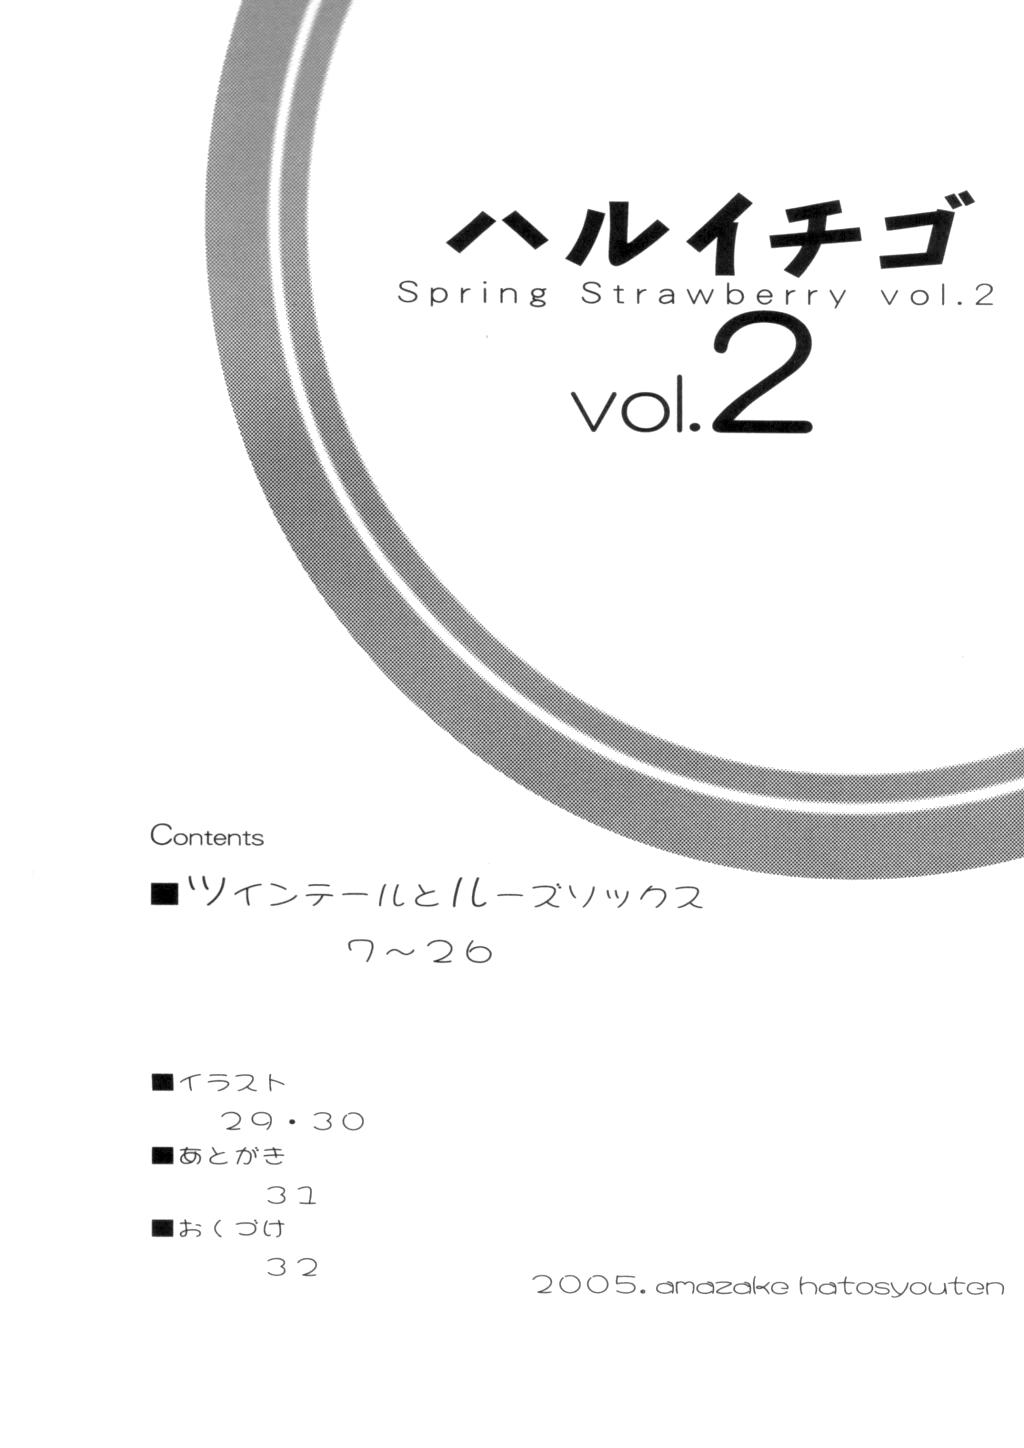 Haru Ichigo Vol. 2 - Spring Strawberry Vol. 2 3